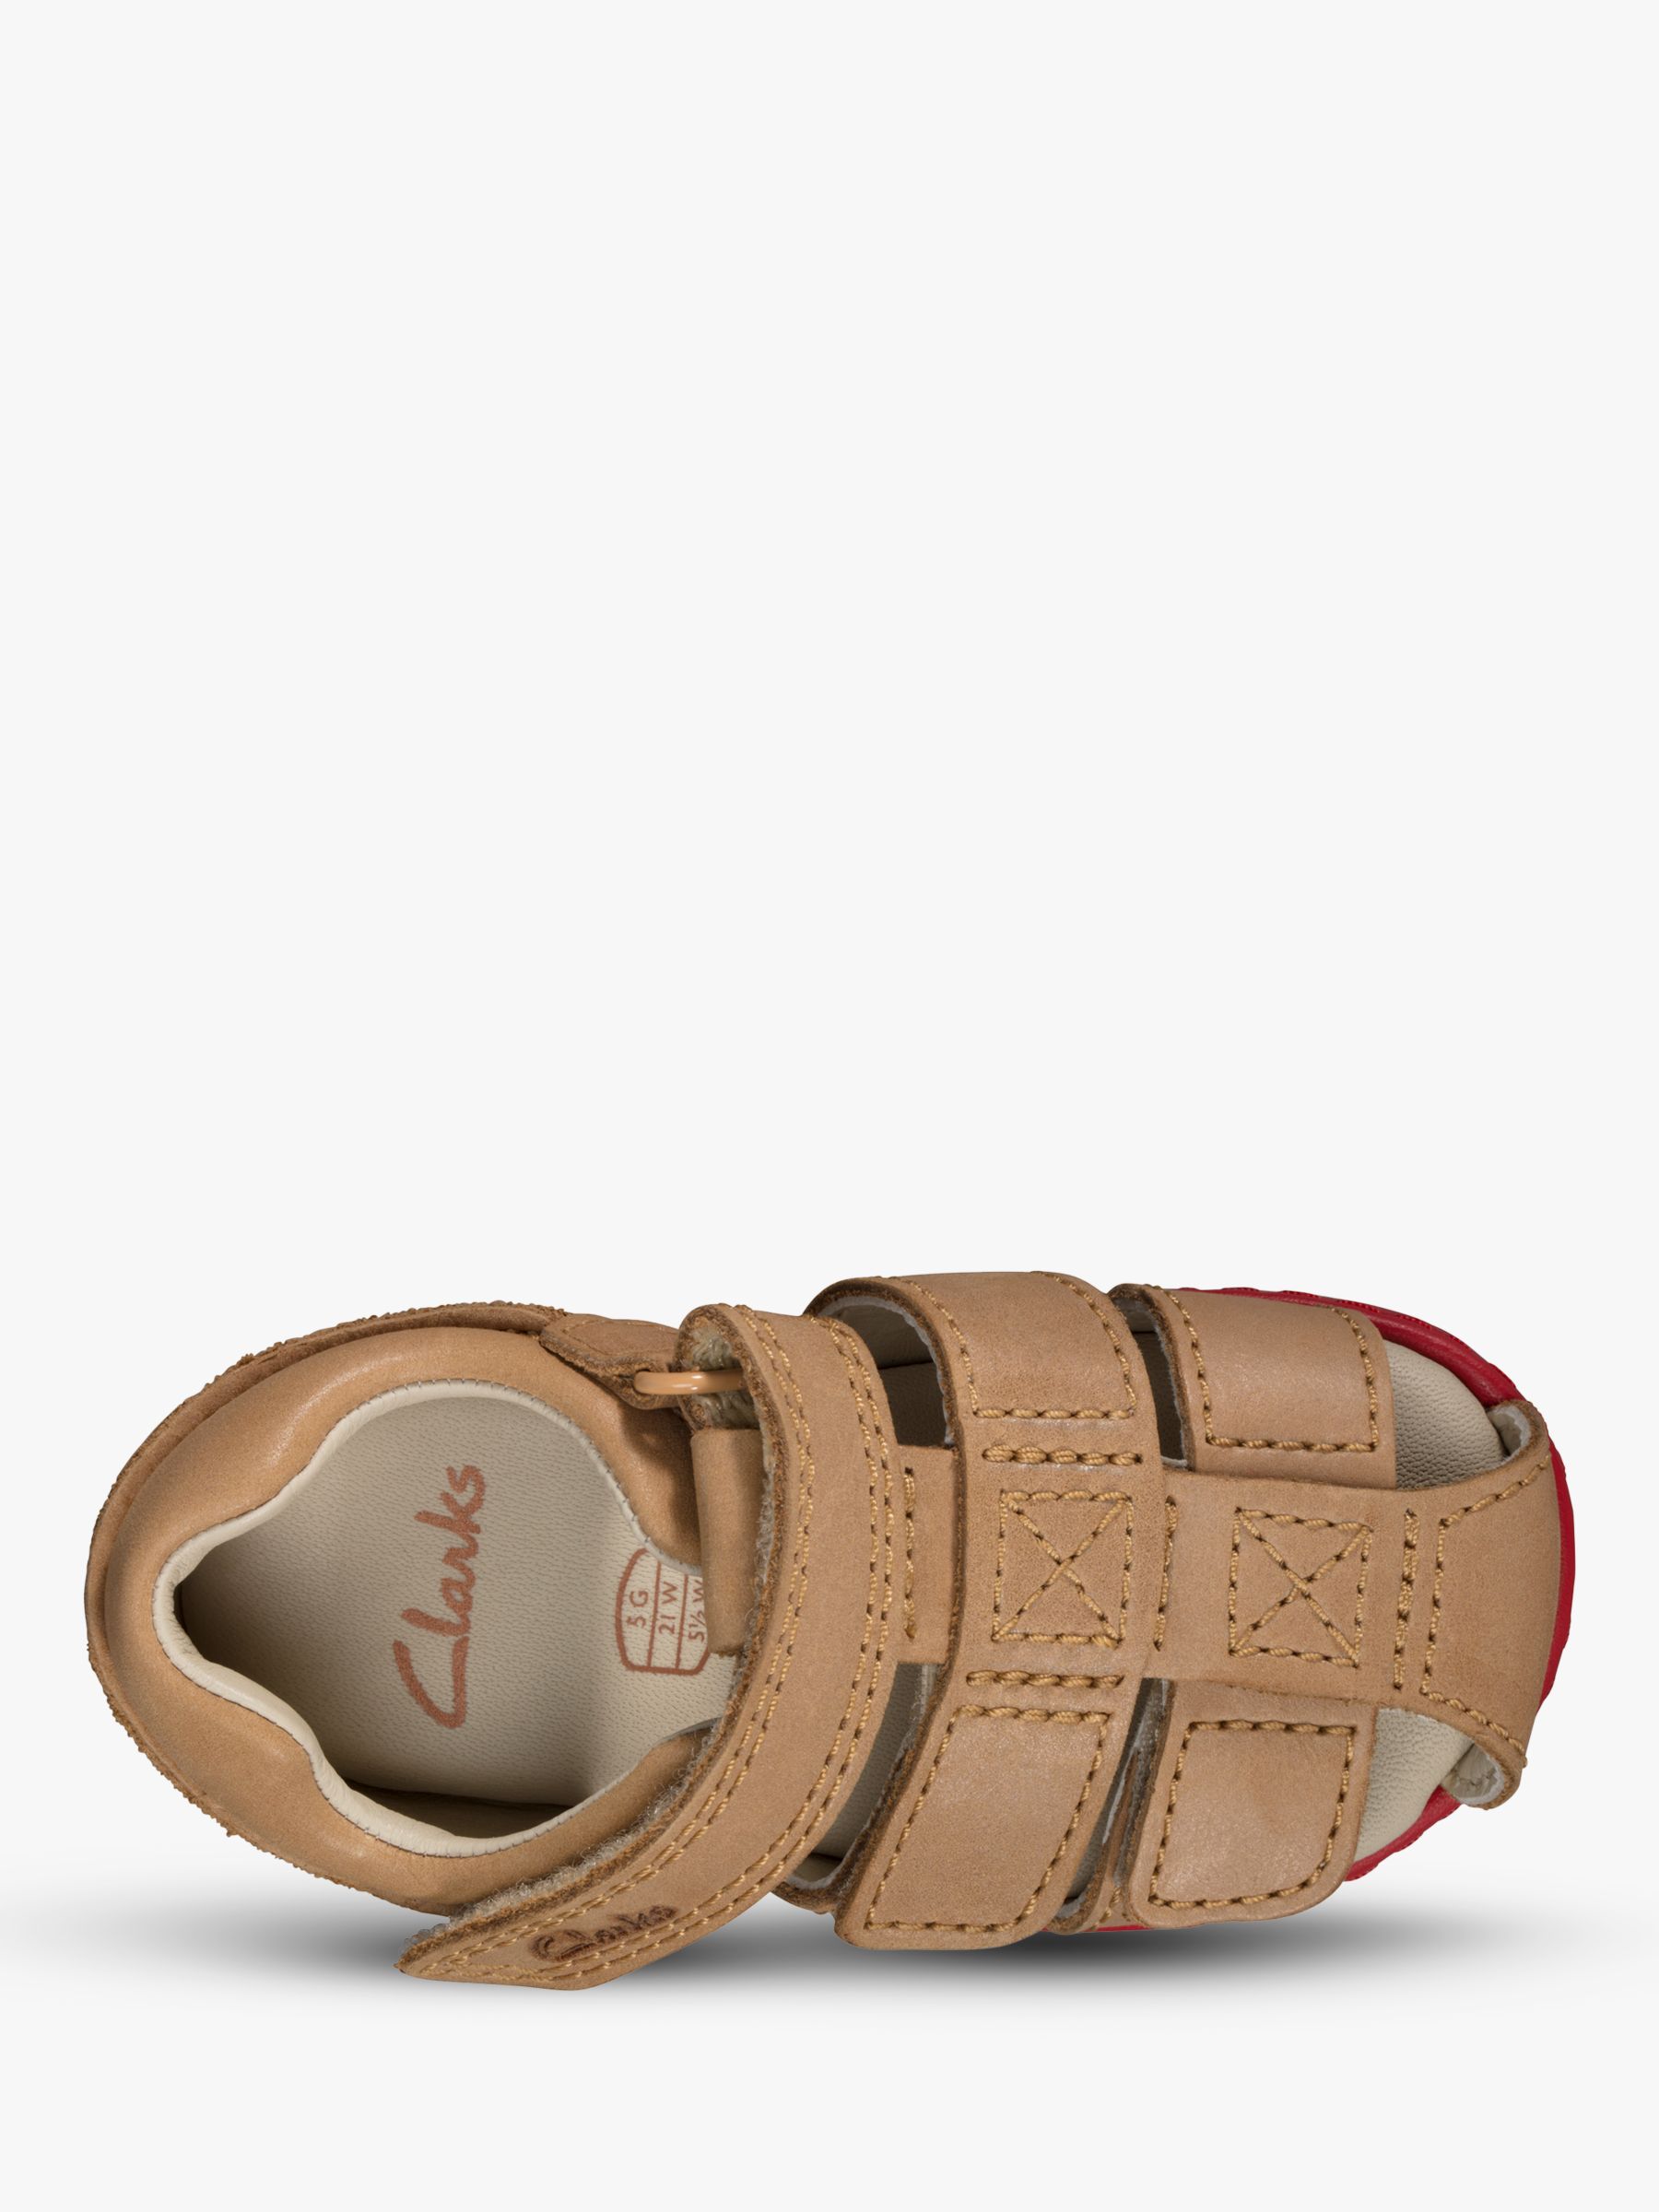 clarks toddler sandals